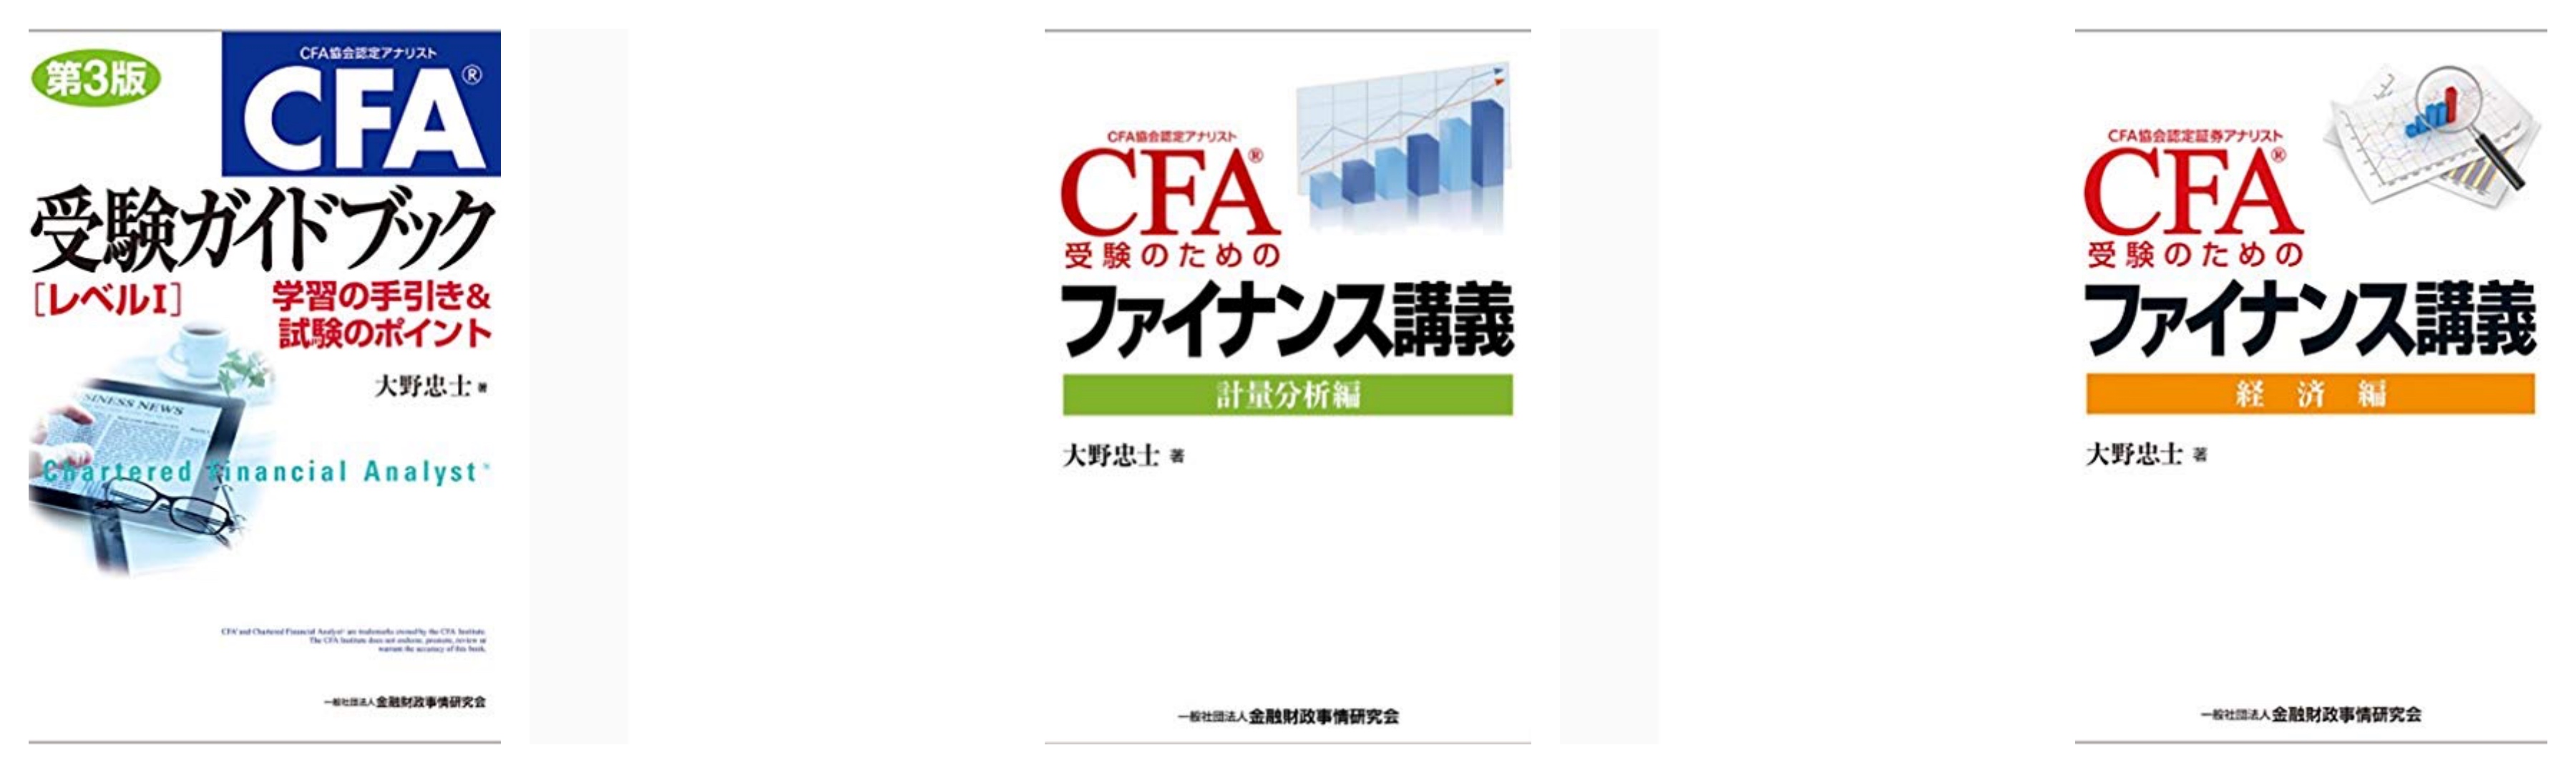 本日の目玉 CFA受験ガイドブック〈レベル1〉 学習の手引き試験の